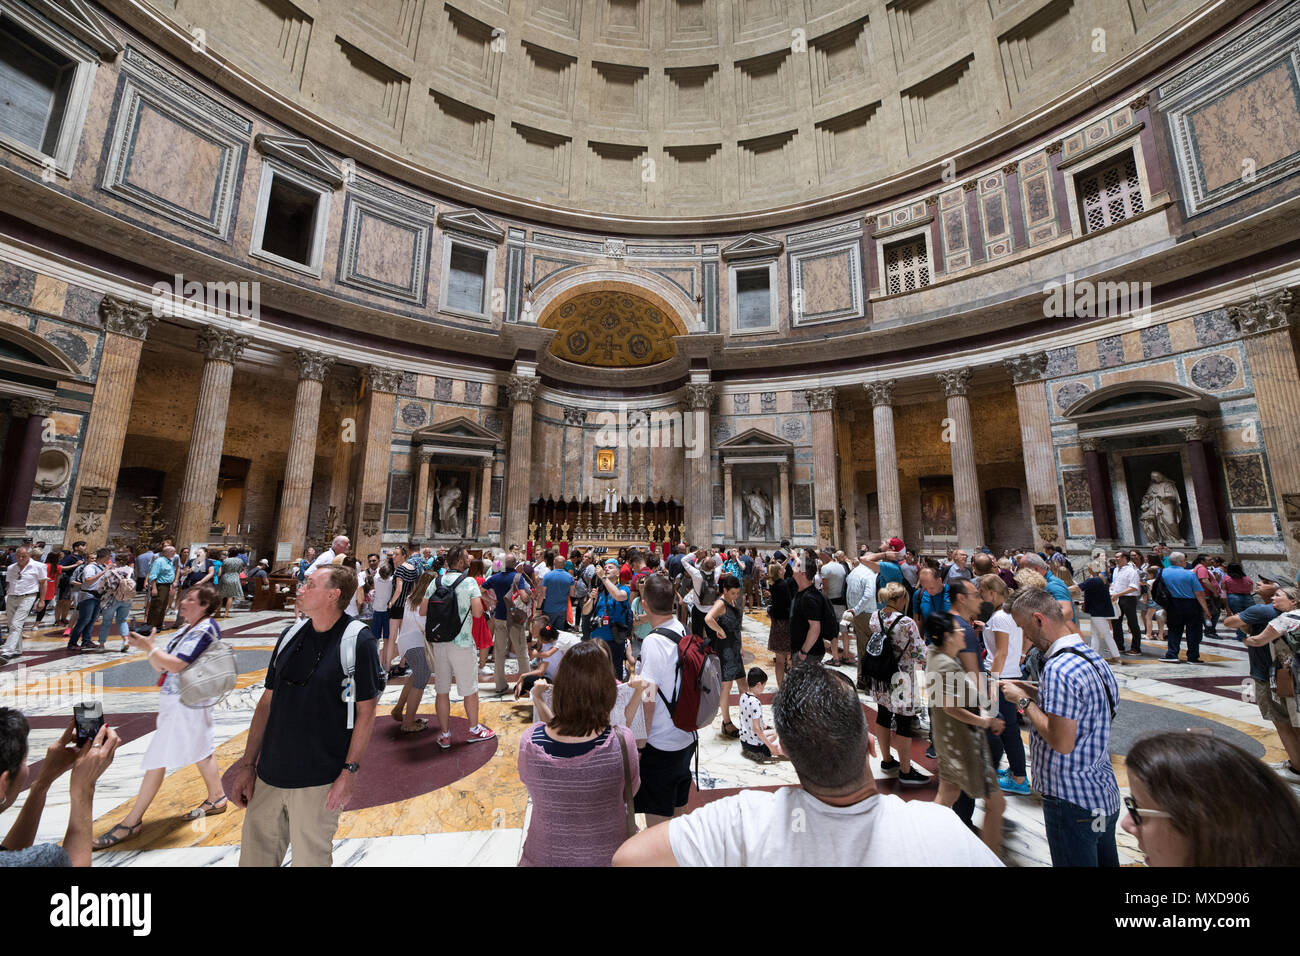 Rome Pantheon interior, tourists visiting Stock Photo